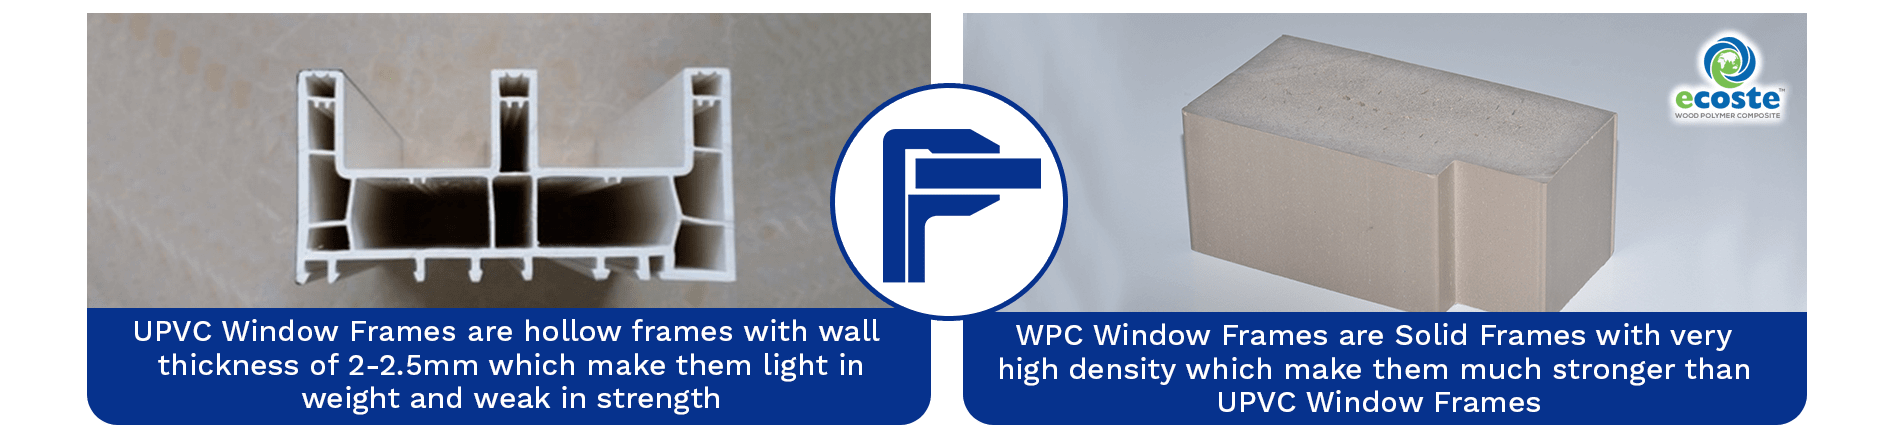 UPVC Window Frame & WPC Solid Window Frame